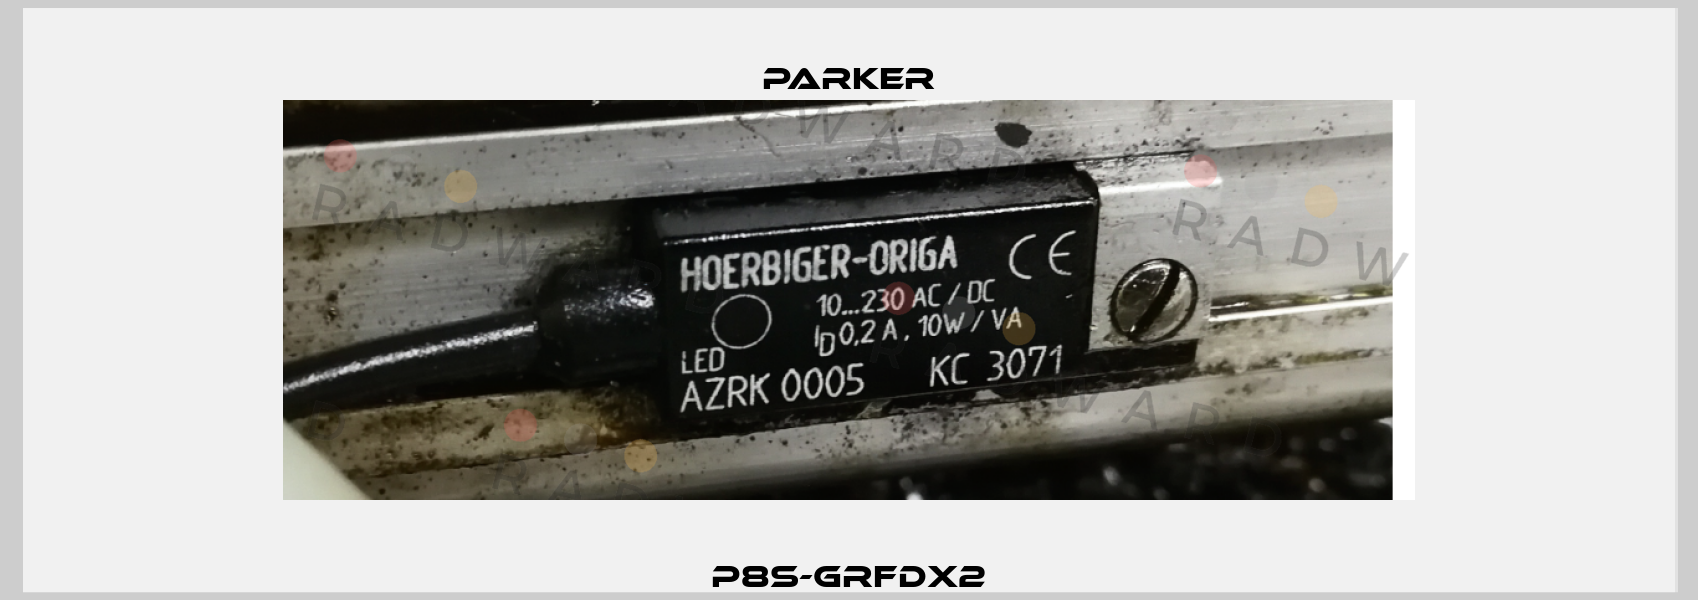 P8S-GRFDX2 Parker